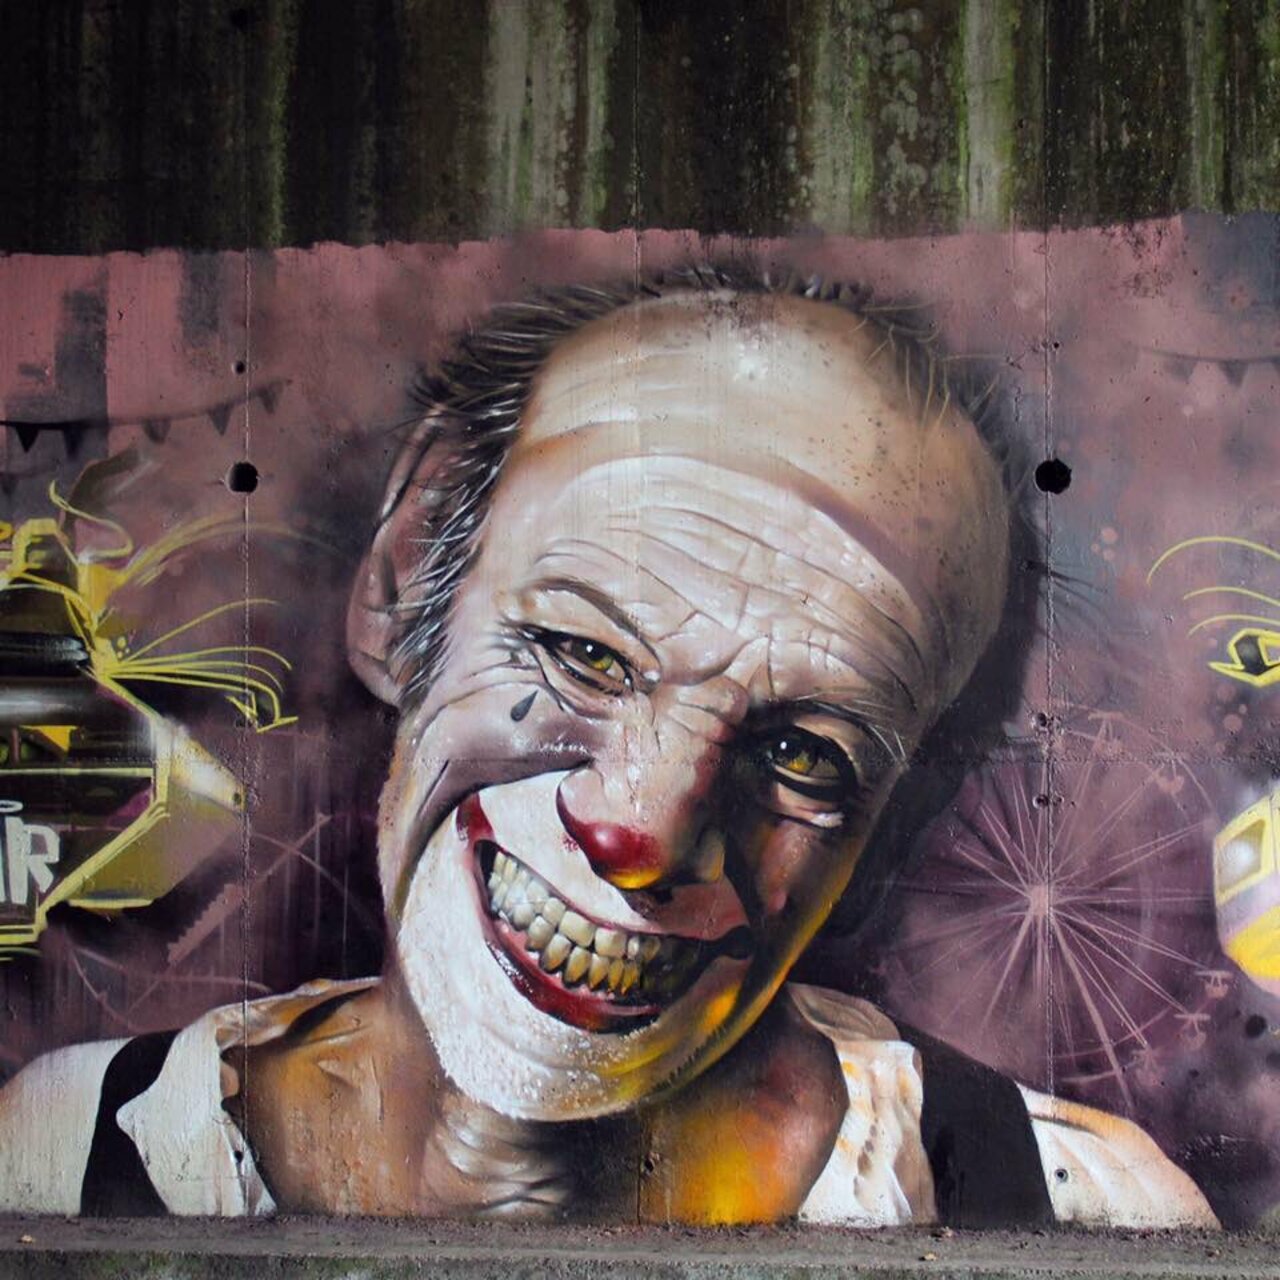 New Street Art by XAV #art #mural #graffiti #streetart https://t.co/XcrDmRaEC4